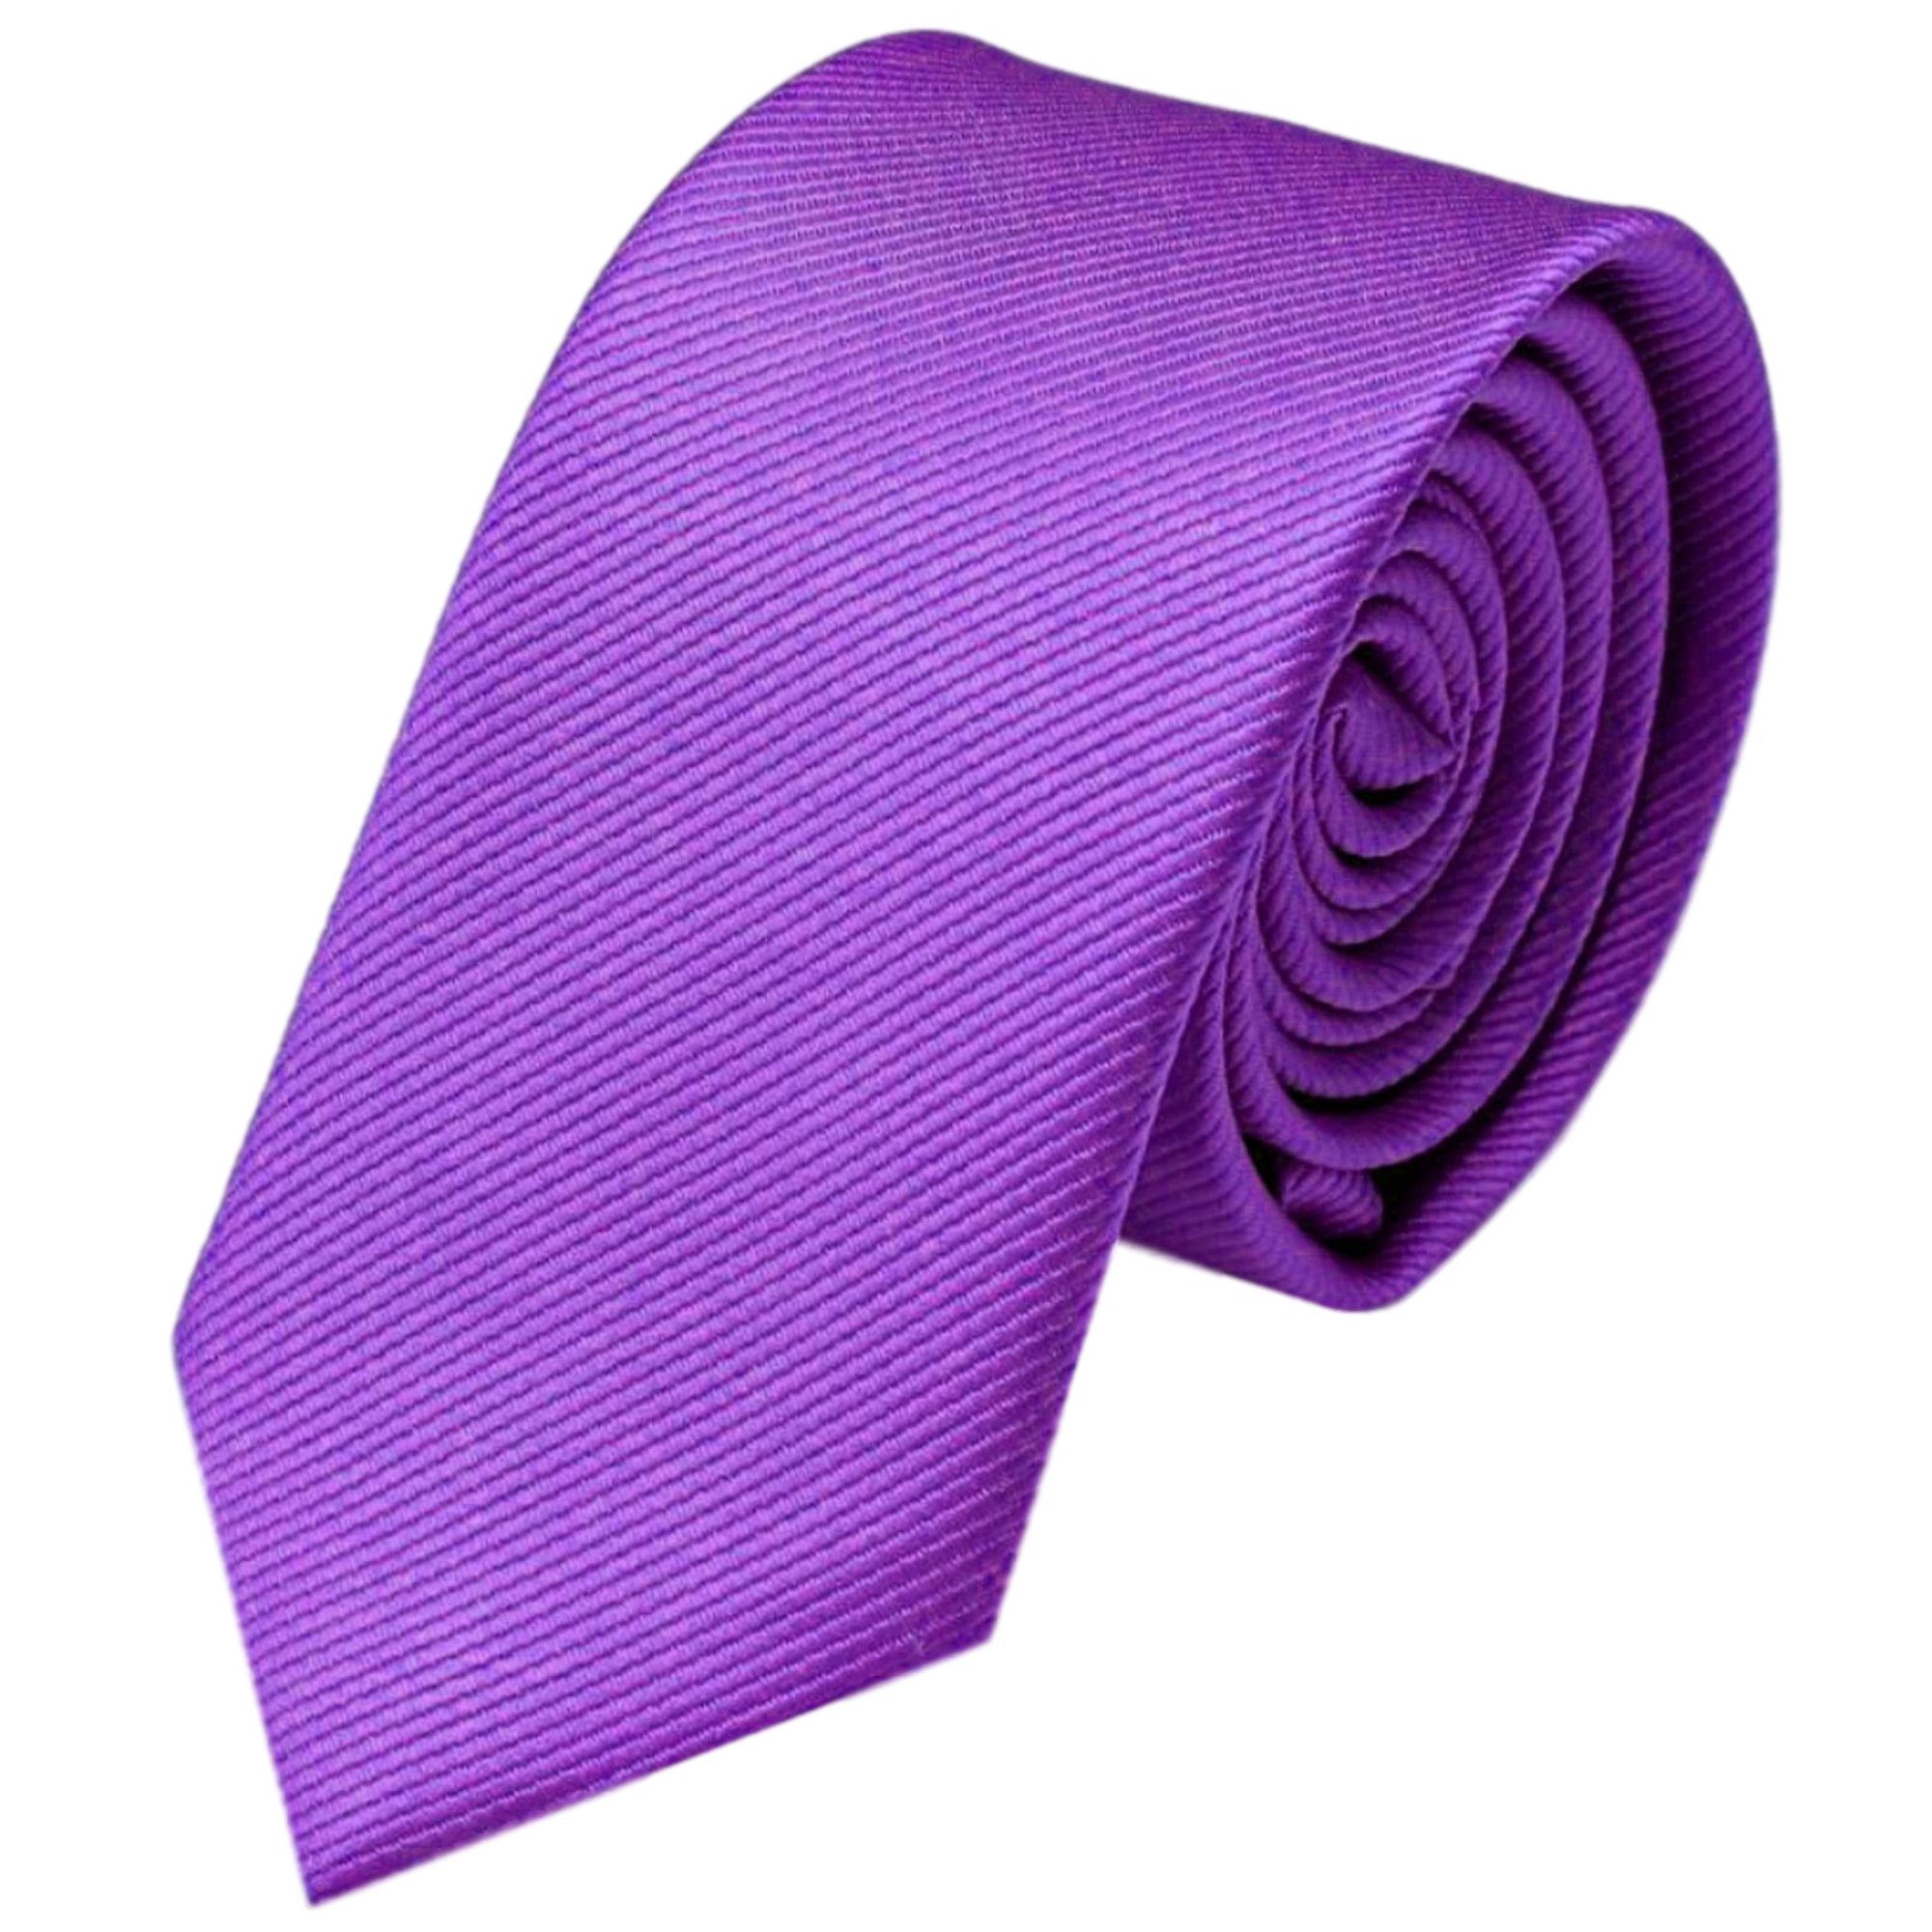 GASSANI Krawatte Schmale Dose Rippen Herren-Krawatte Blau-Lila Lavendel Streifen, Feine 2-St., Männer-Schlips Männer (set, Uni In Geschenkverpackung) Blech-Spardose, mit Slim-Fit Mauve Geschenk-Box Gestreifte Flieder-Violett Seide-Touch Business-Krawatte, Rips